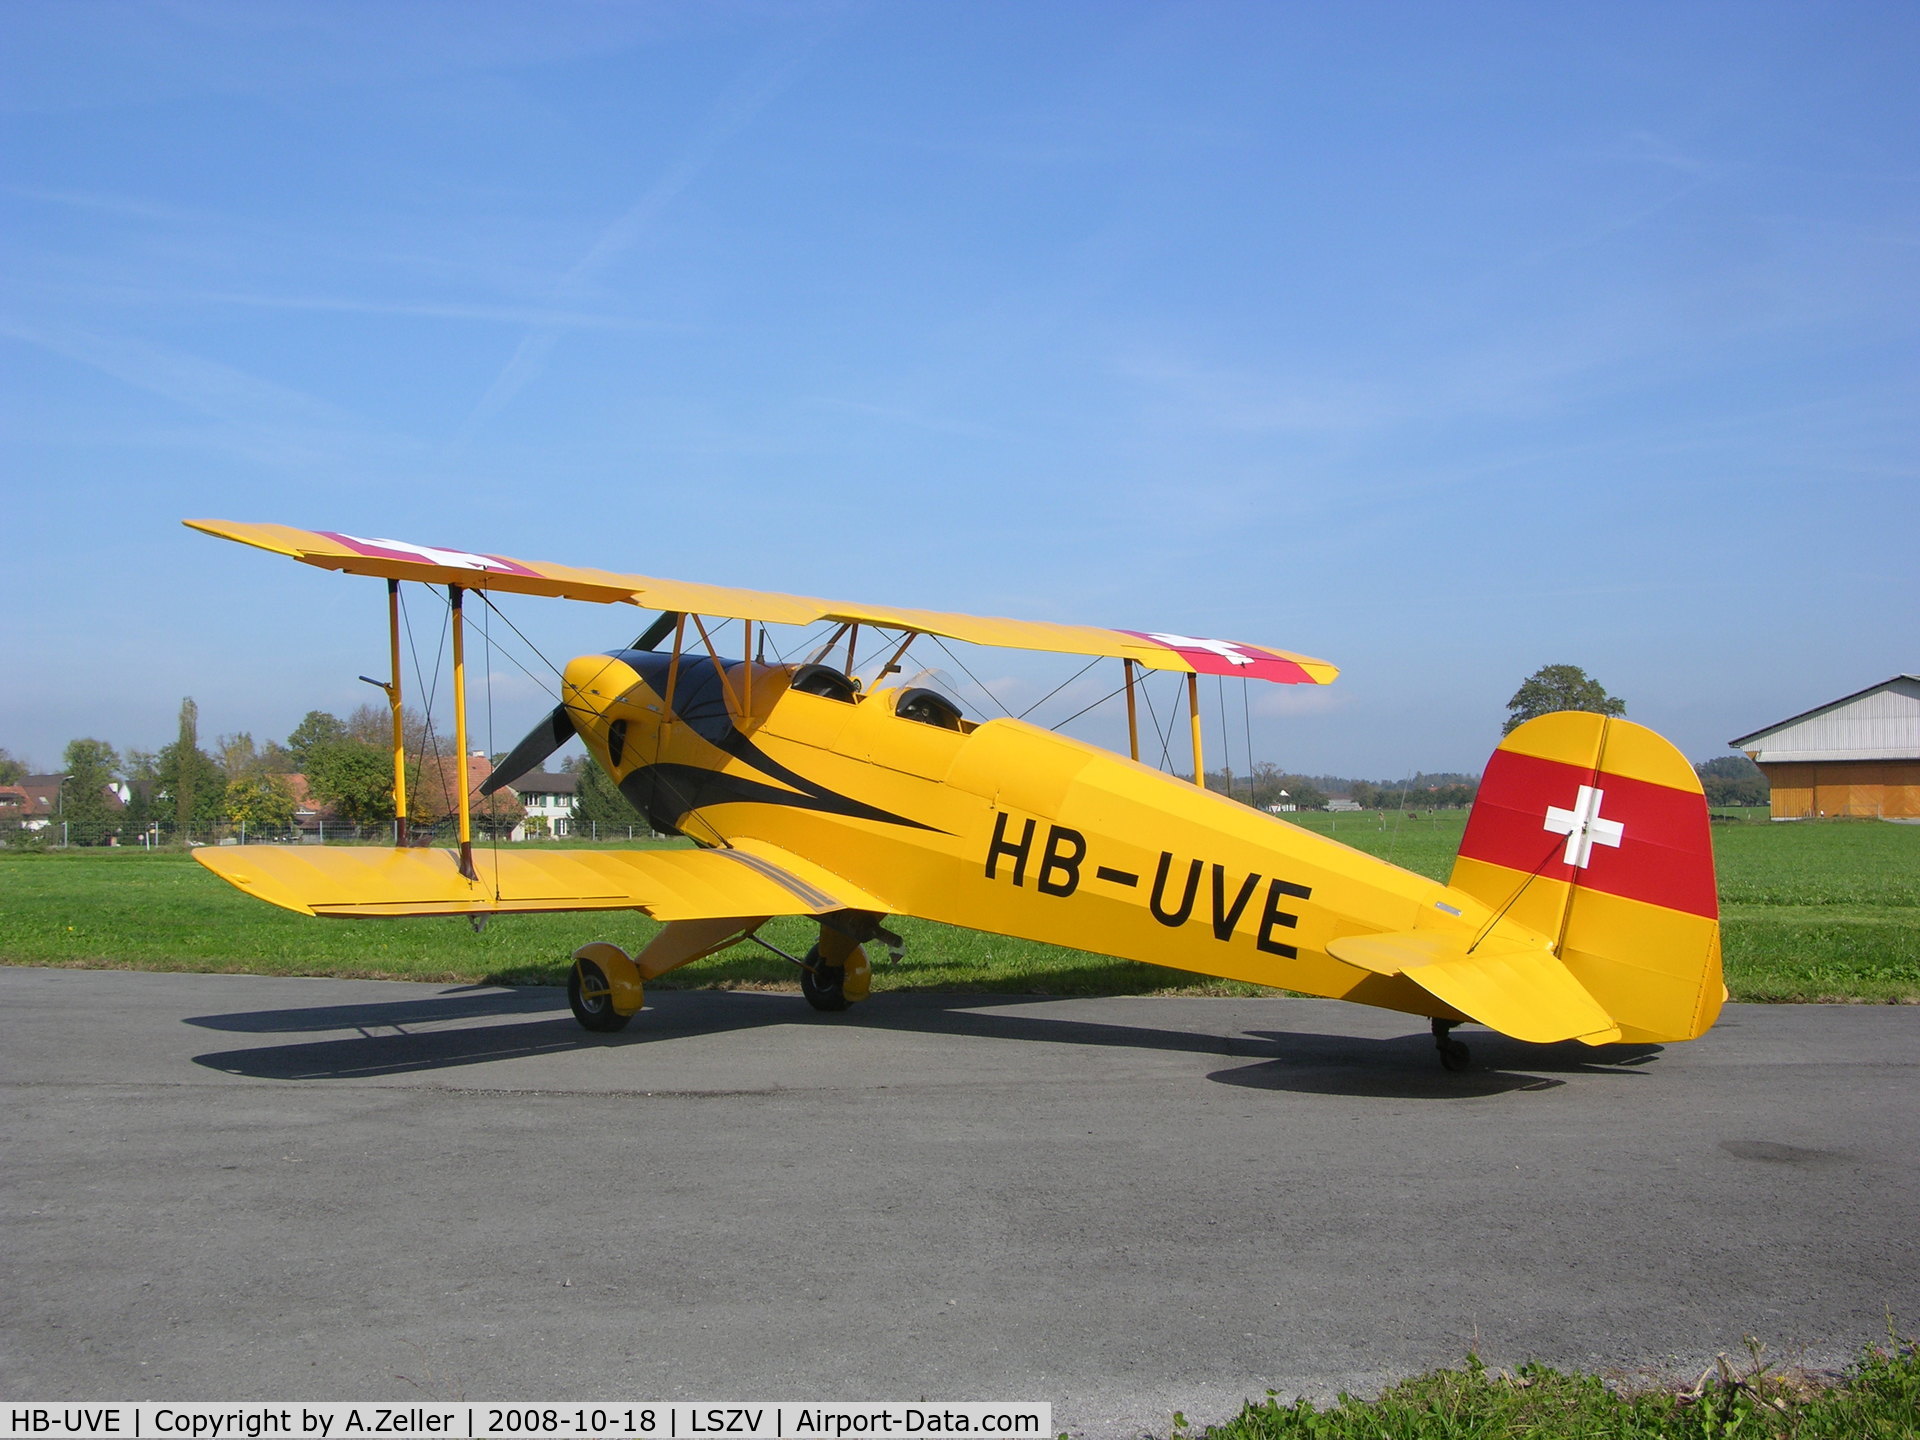 HB-UVE, 1939 Bucker Bu-131APM Jungmann C/N 69, Bücker 131 APM